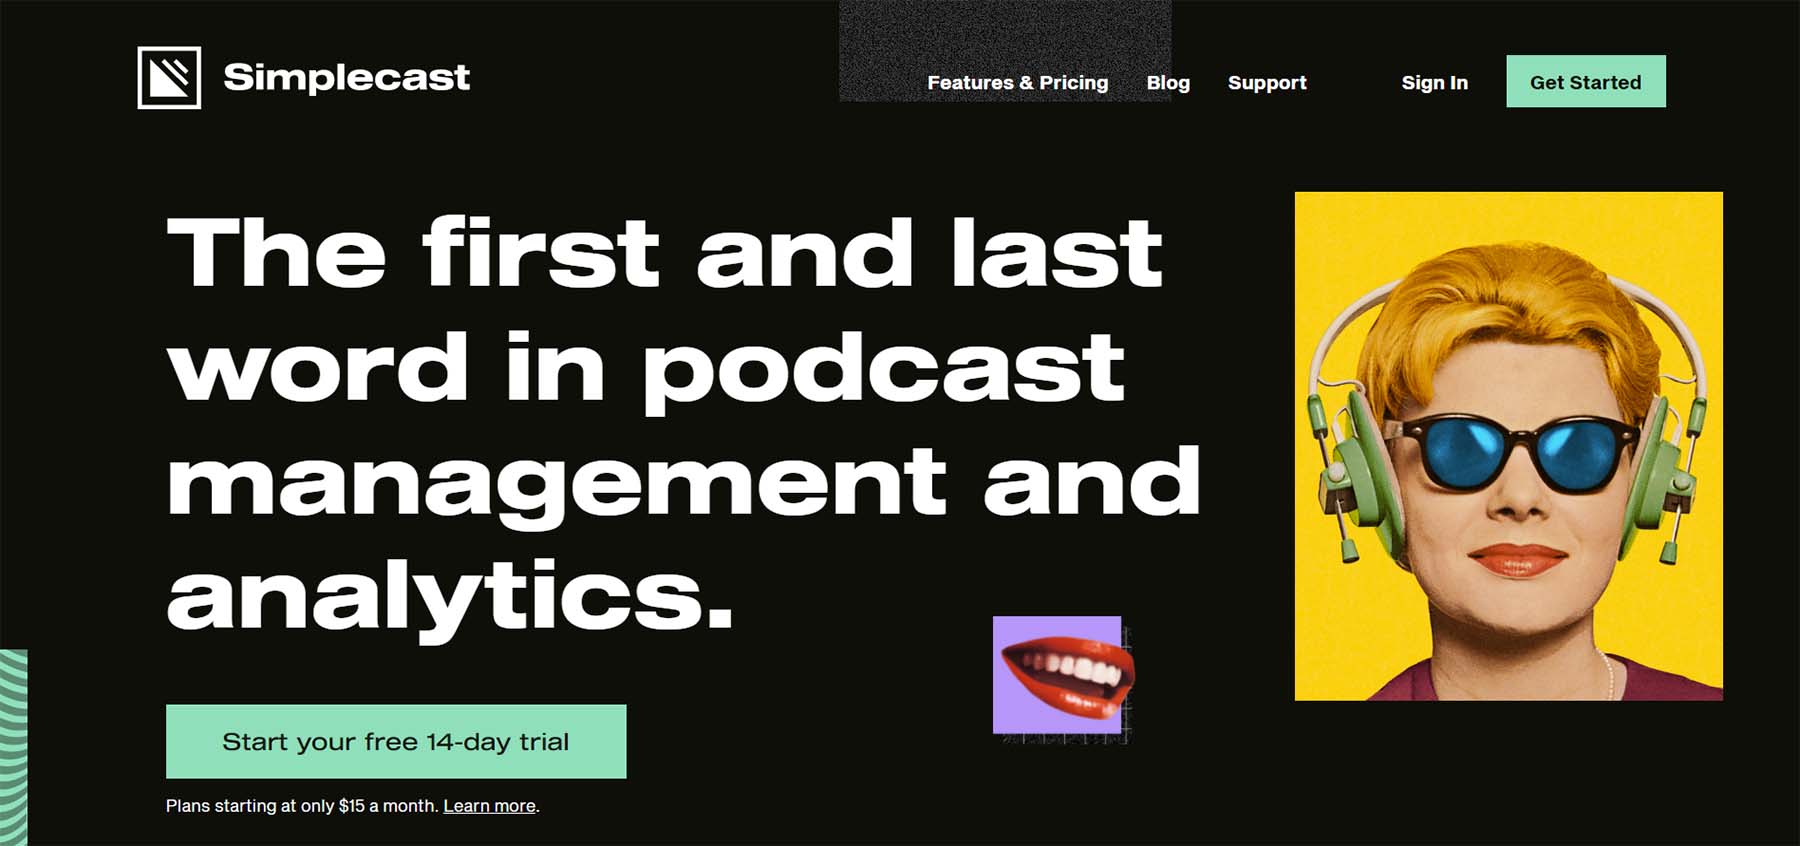 Simplecast, a podcasting platform